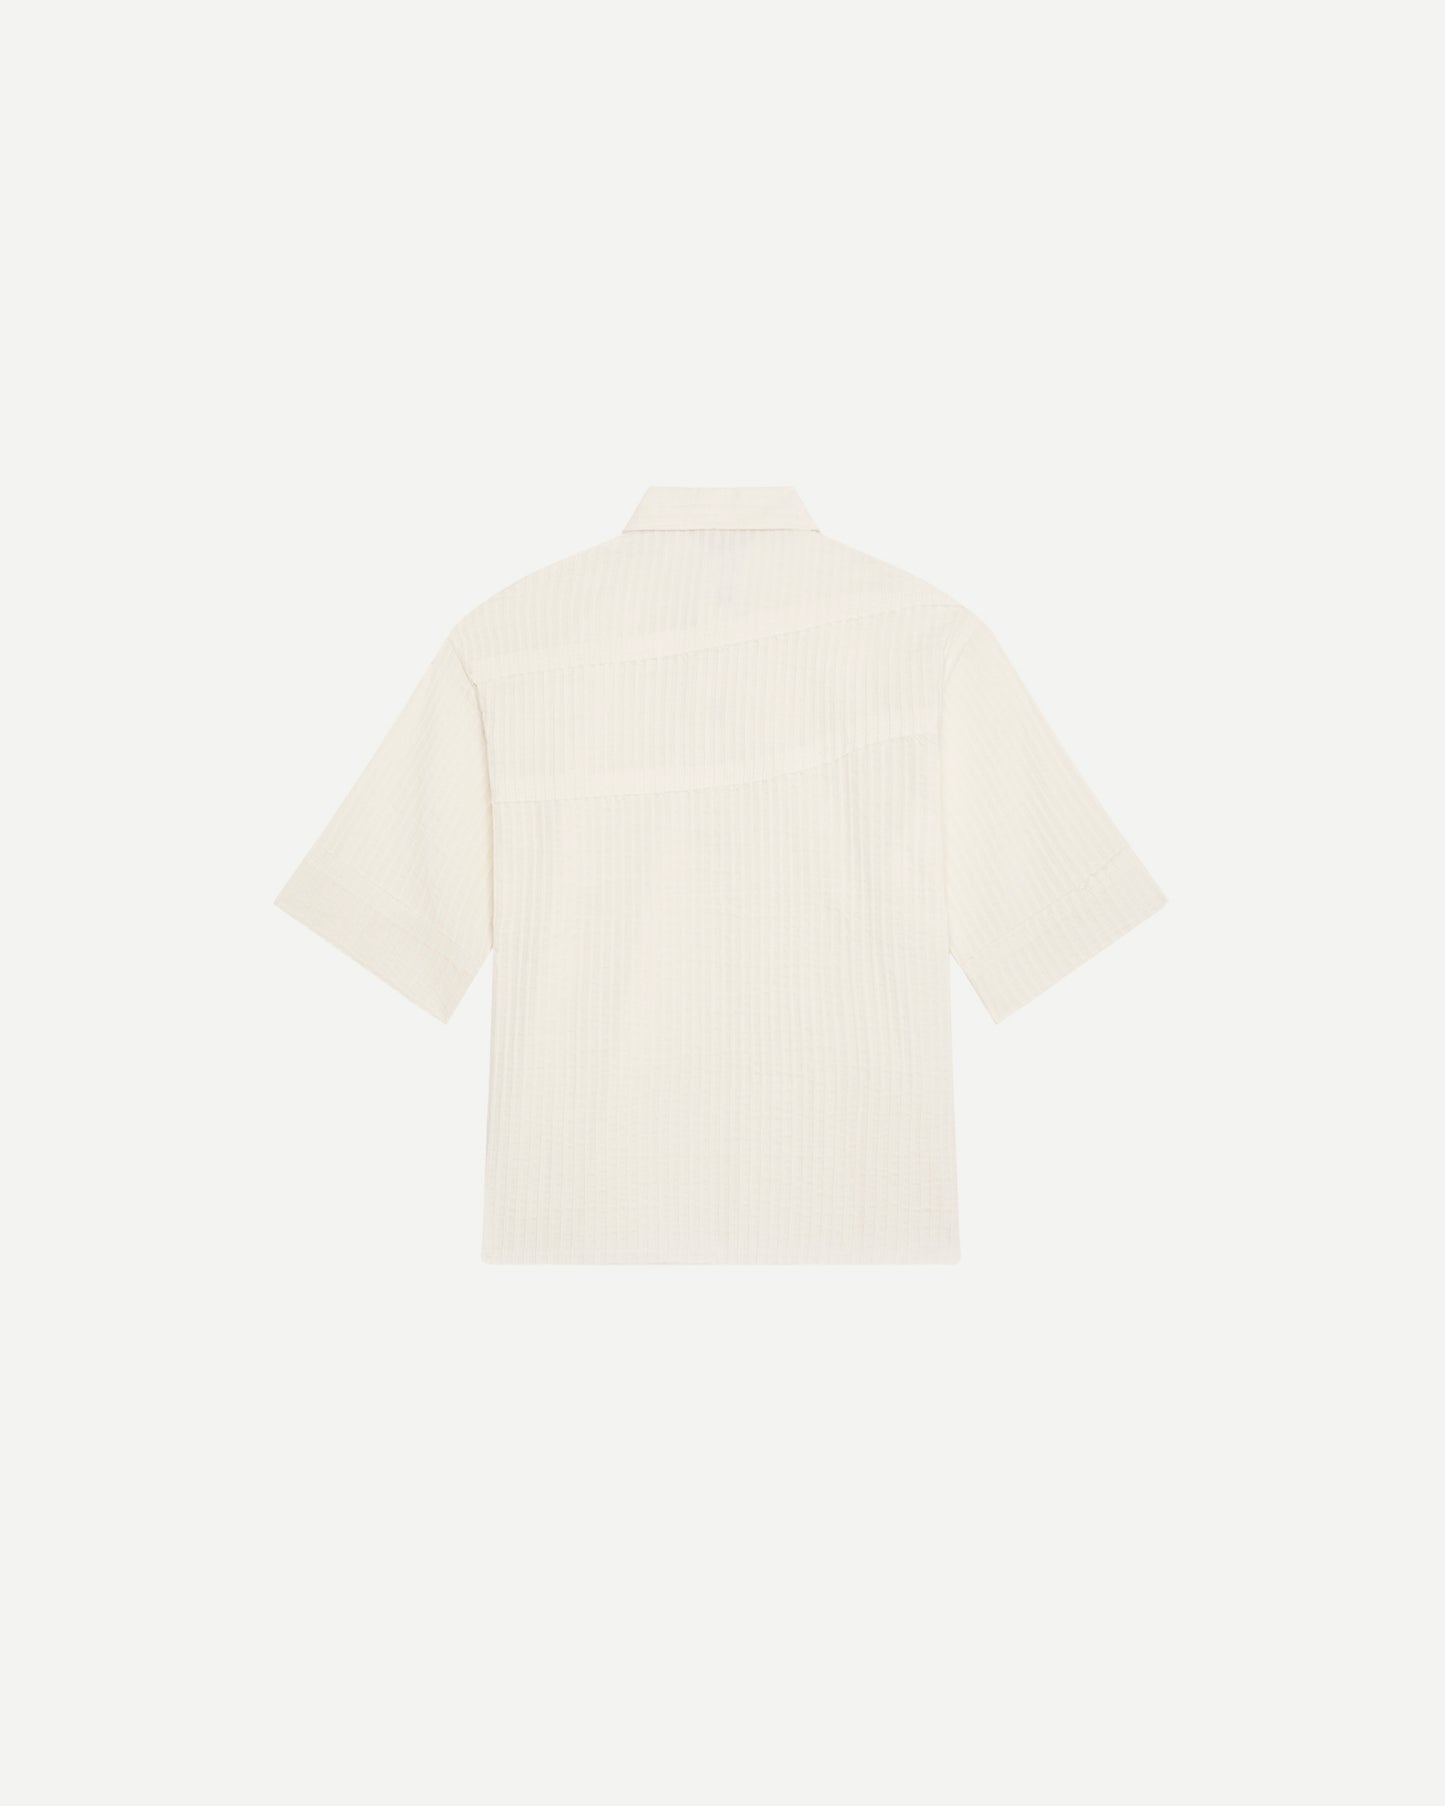 Chemise de luxe pour homme Erevan, à manche courte à grand col, coton plissé blanc, fabriquée au portugal